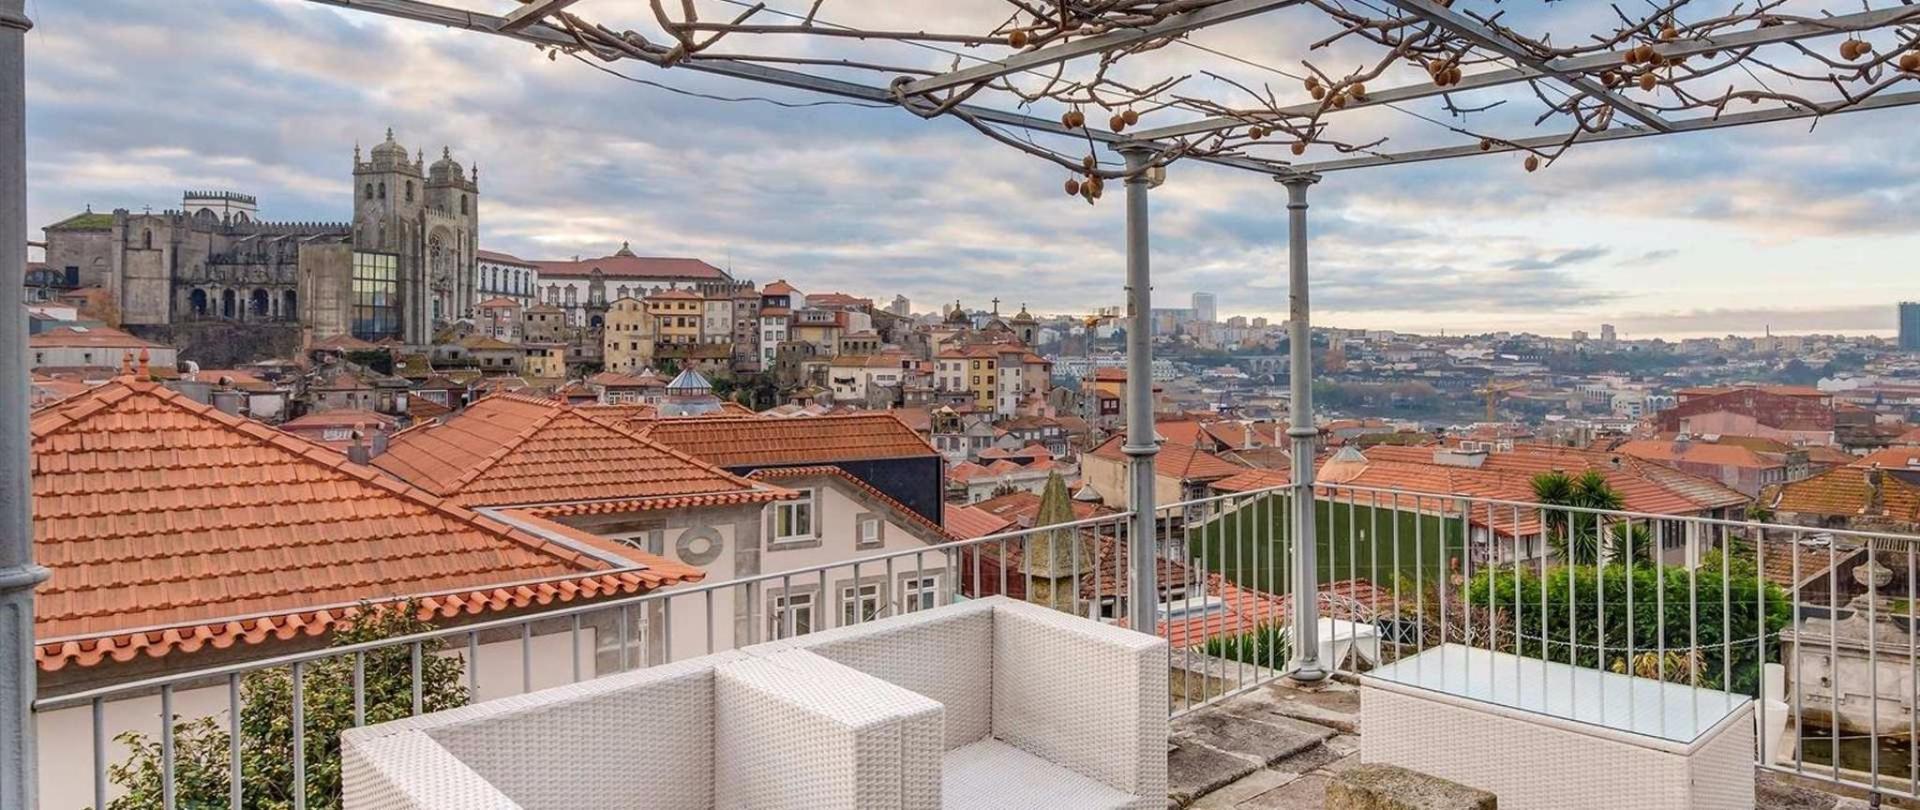 Flores Boutique Hotel Spa Has A Prime Location In Porto